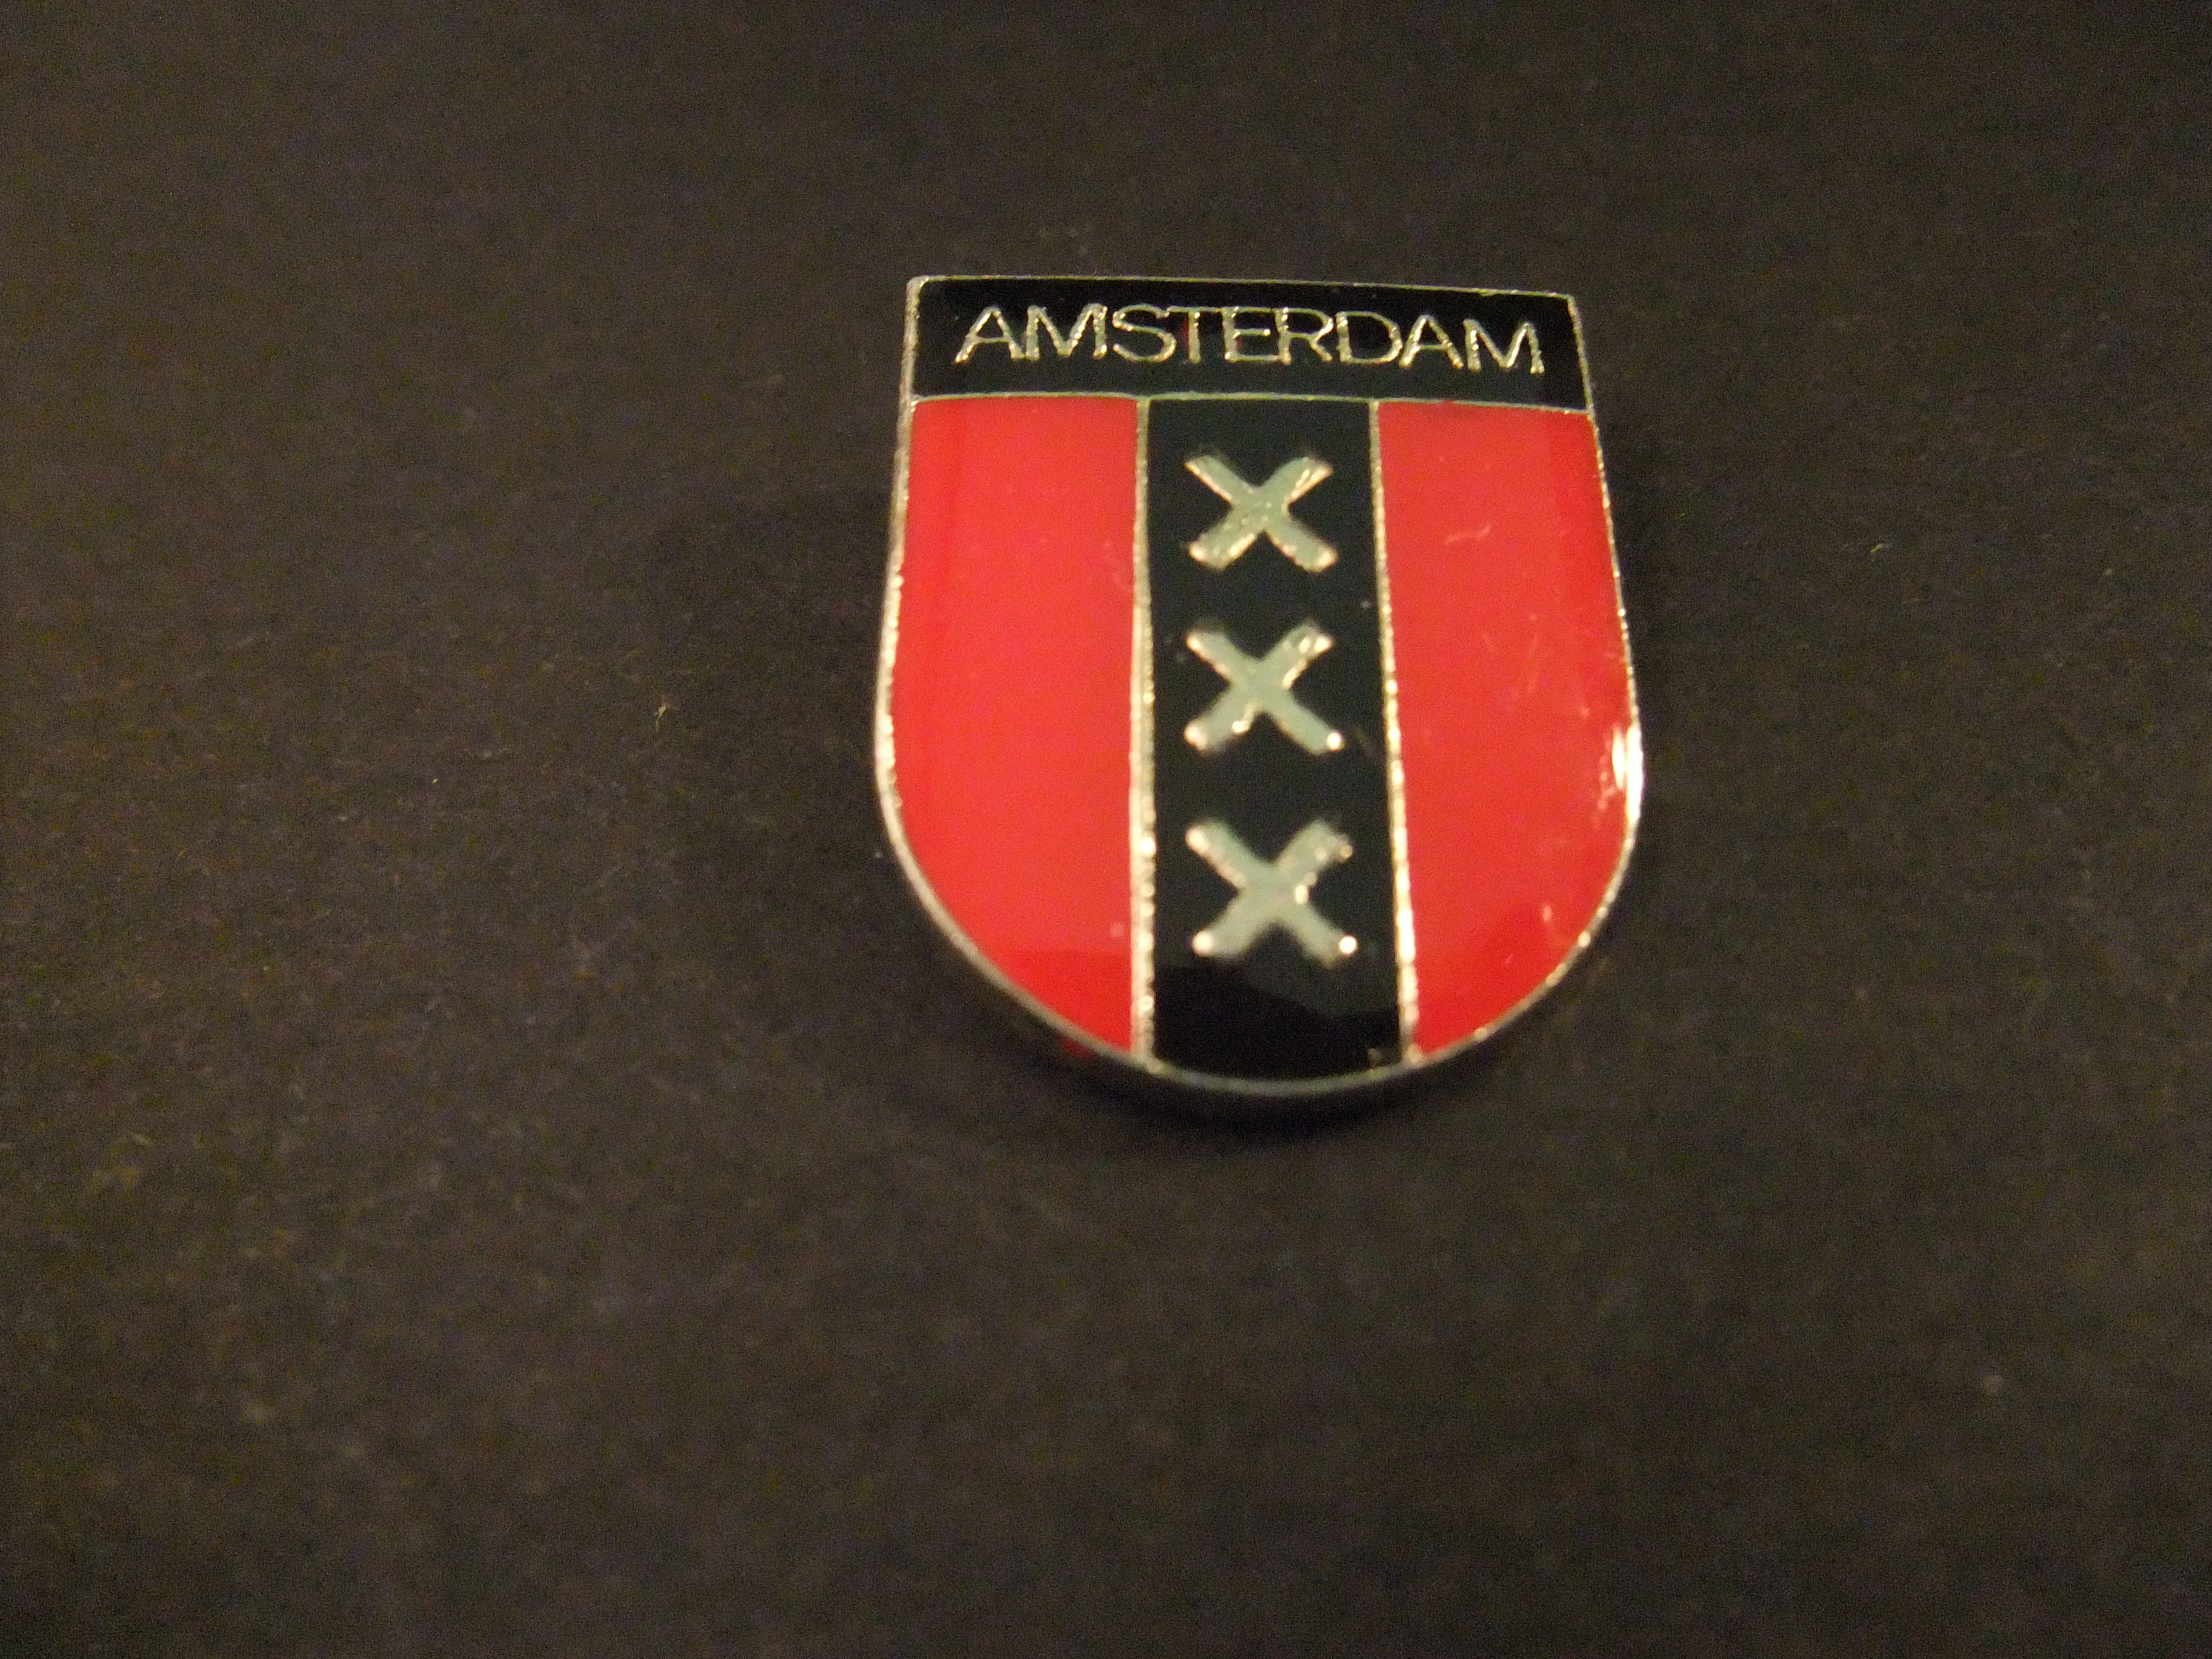 Amsterdam stadswapen drie kruisen ( Andreaskruisen)